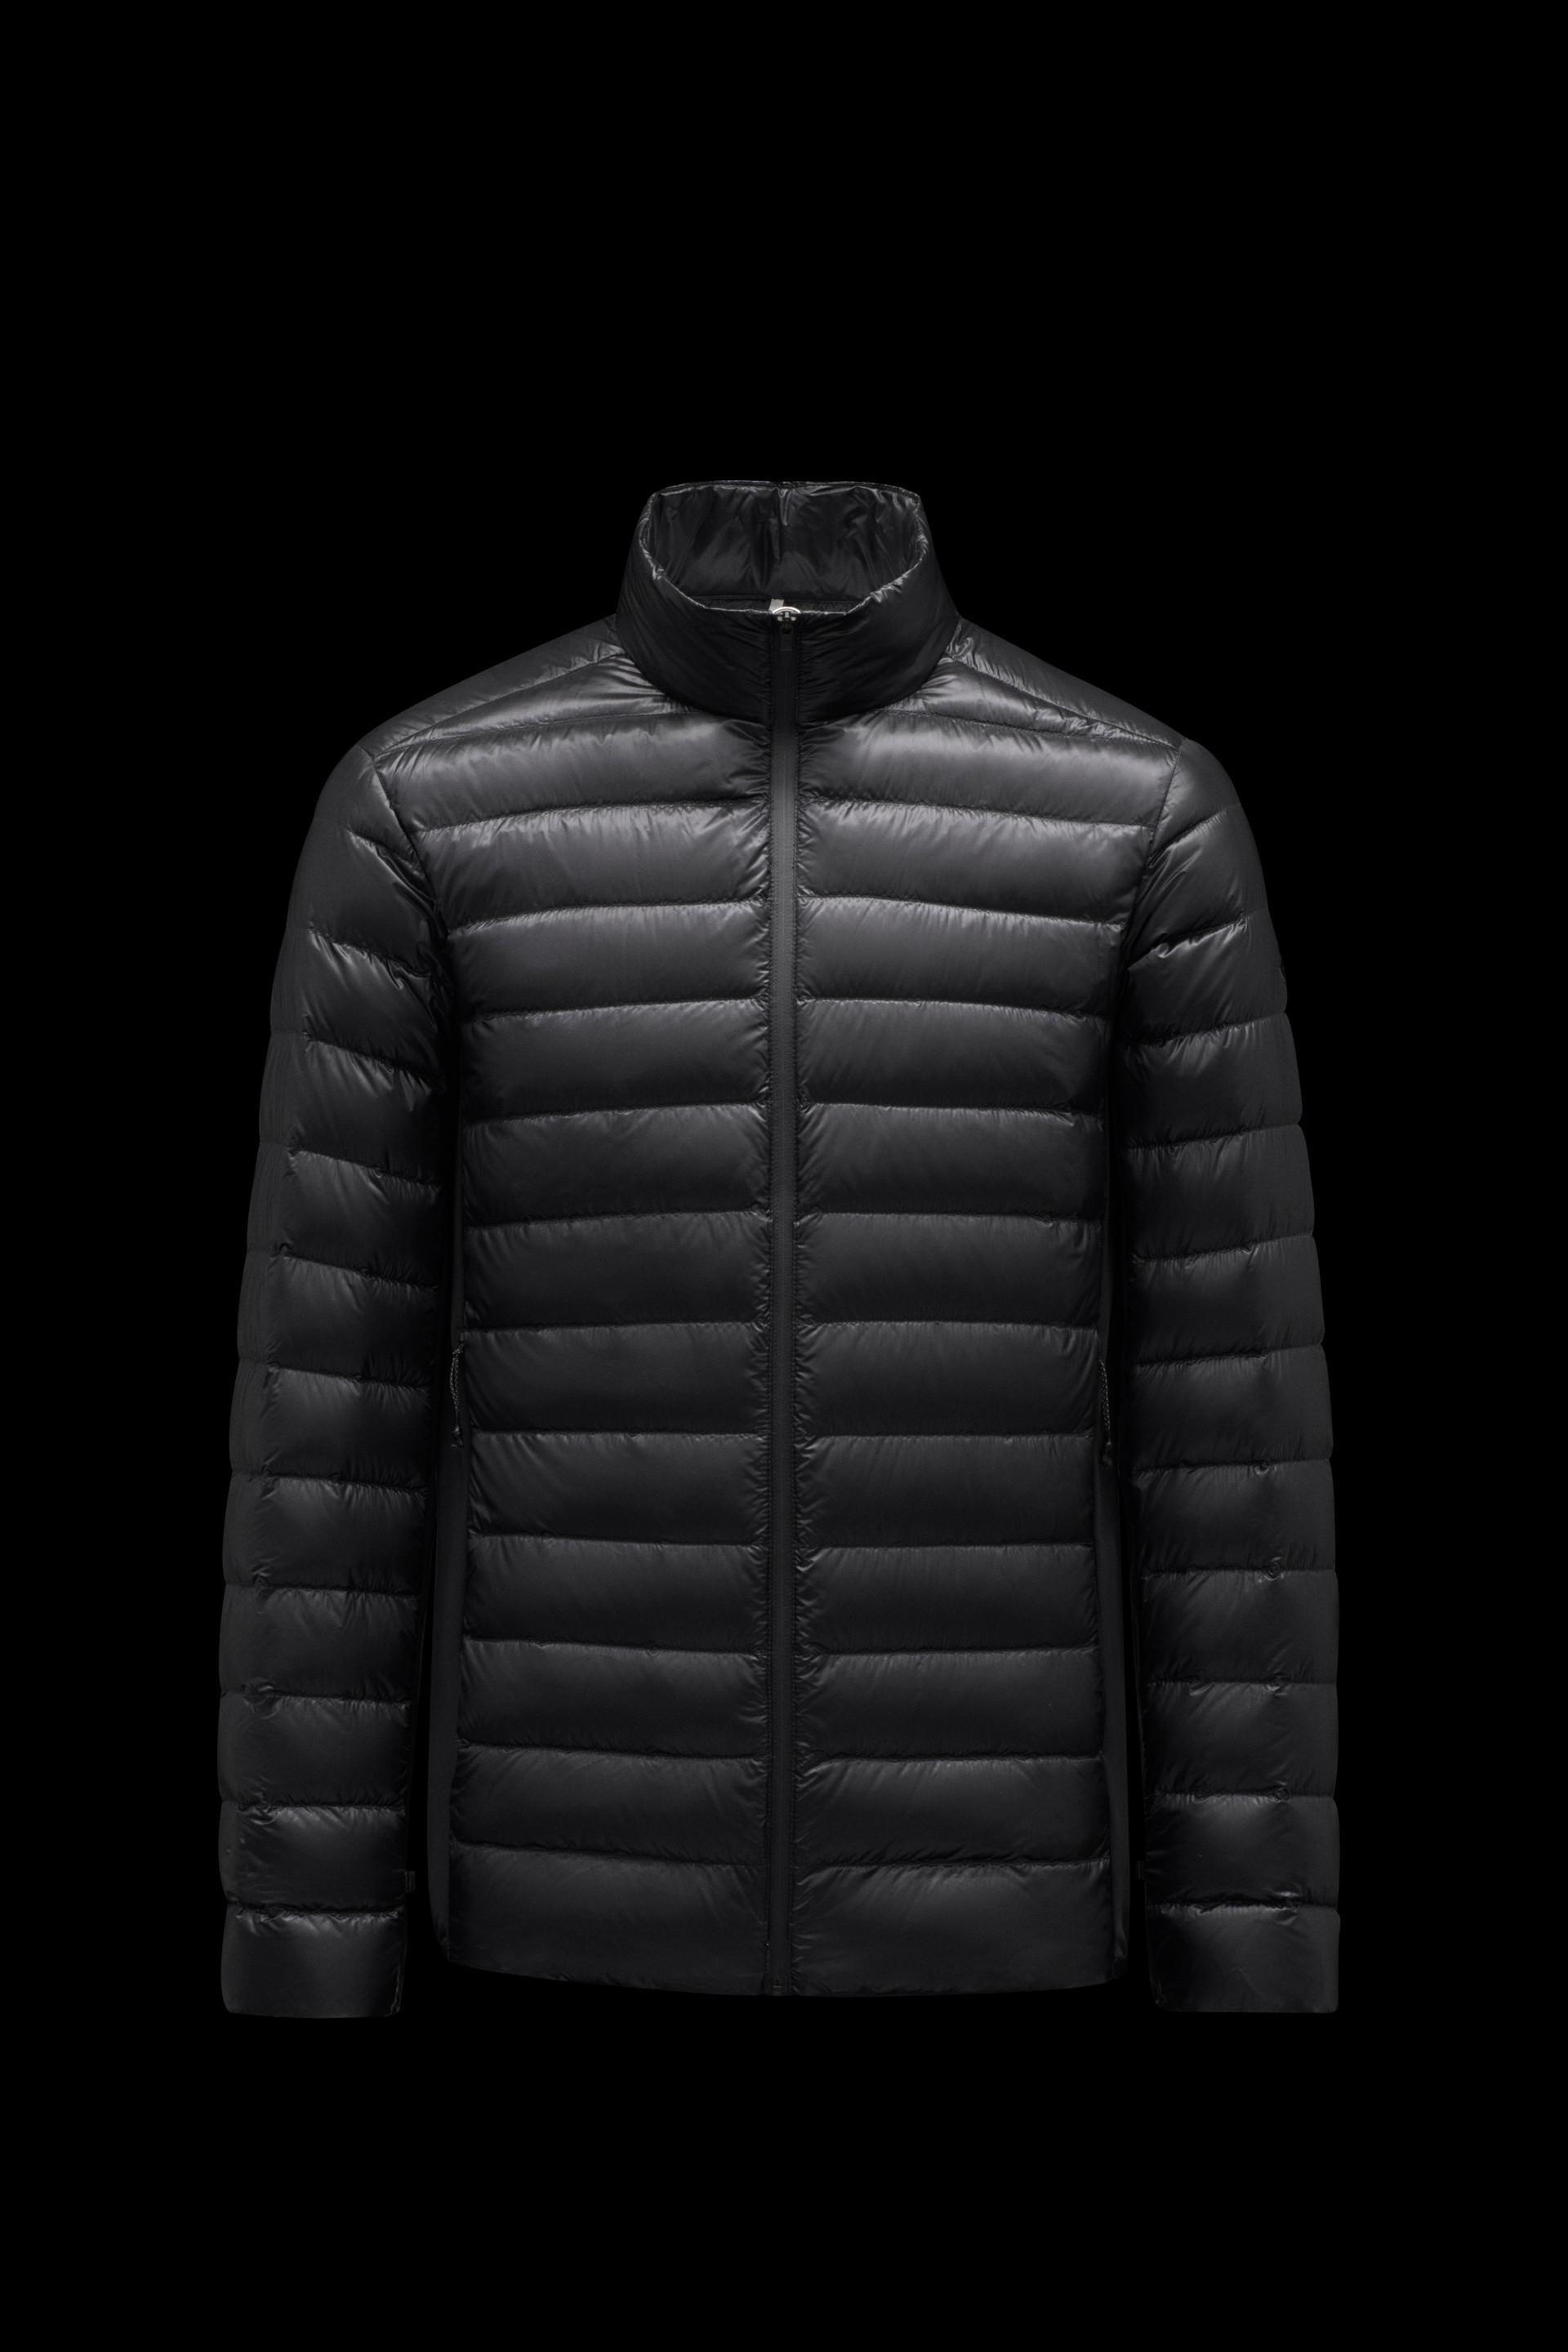 Moncler Vosges Short Down Jacket in Black for Men - Lyst